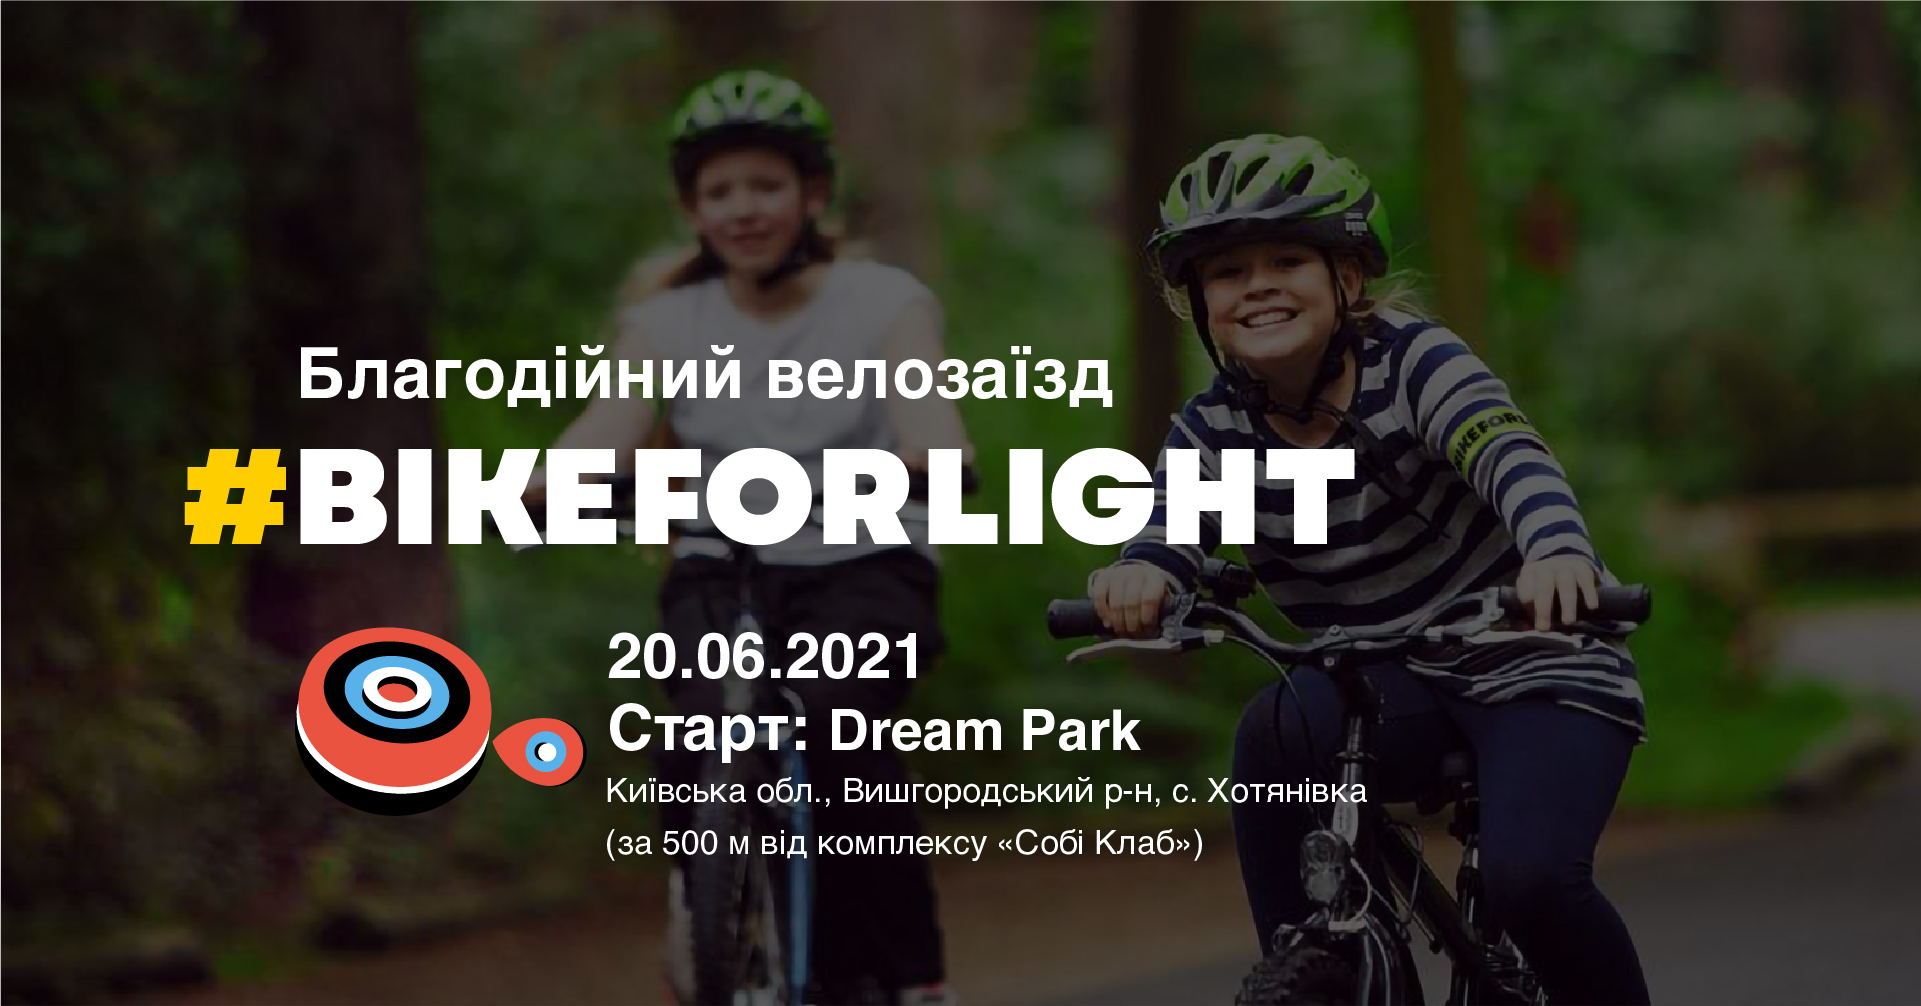 Благодійний велозаїзд #bikeforlight